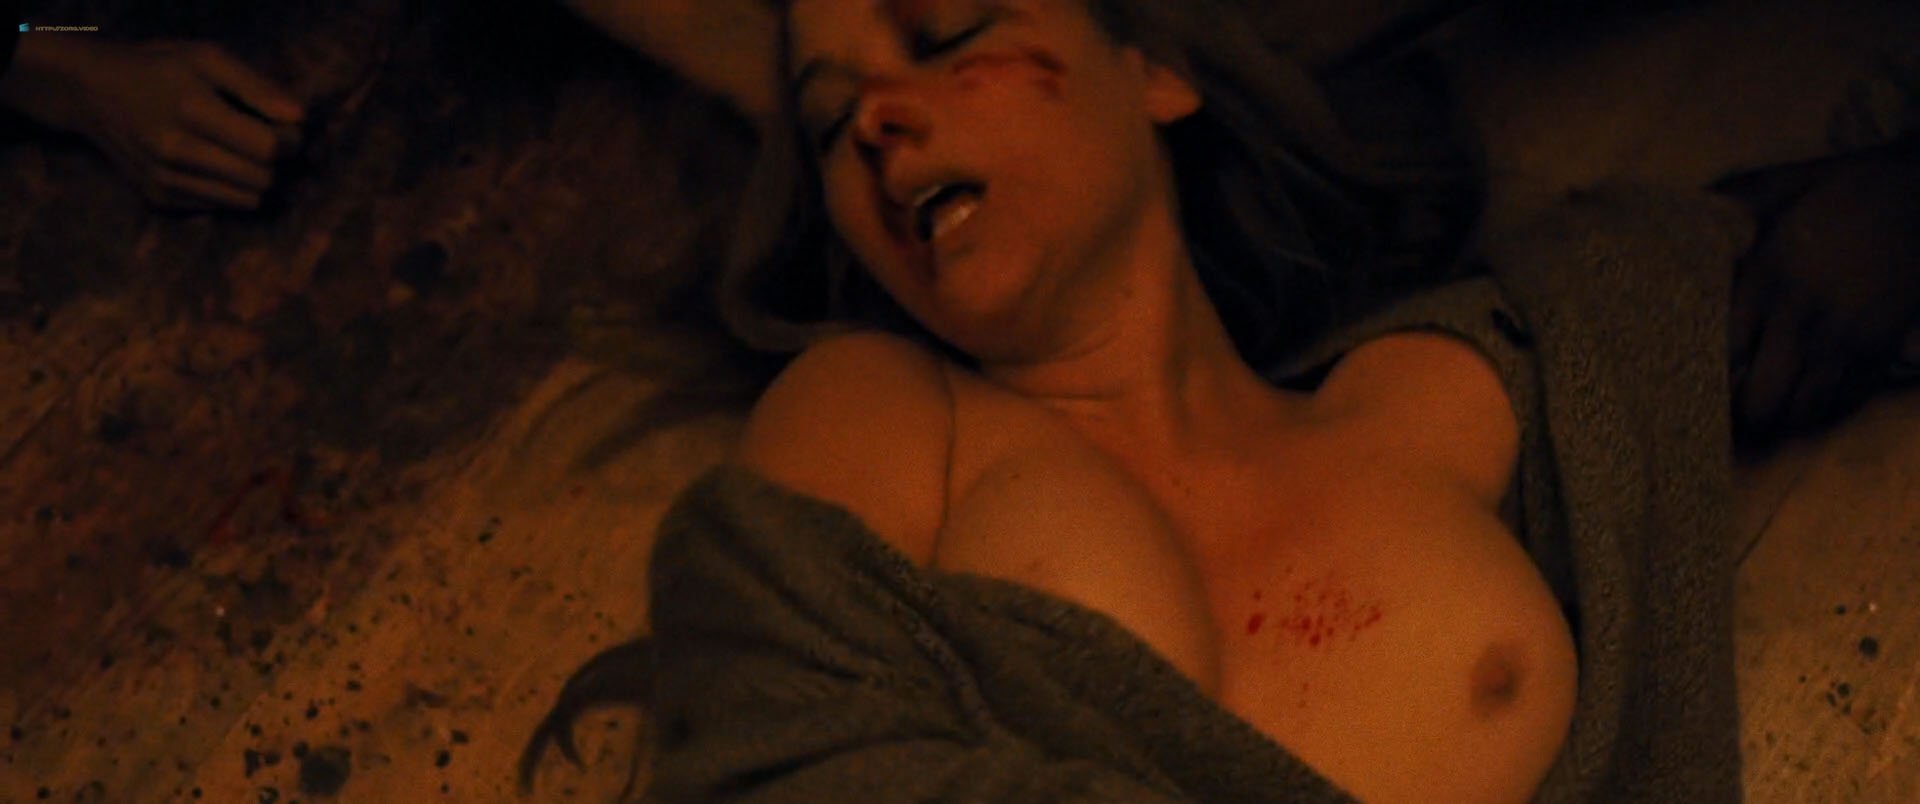 Nude video celebs Â» Actress Â» Jennifer Lawrence